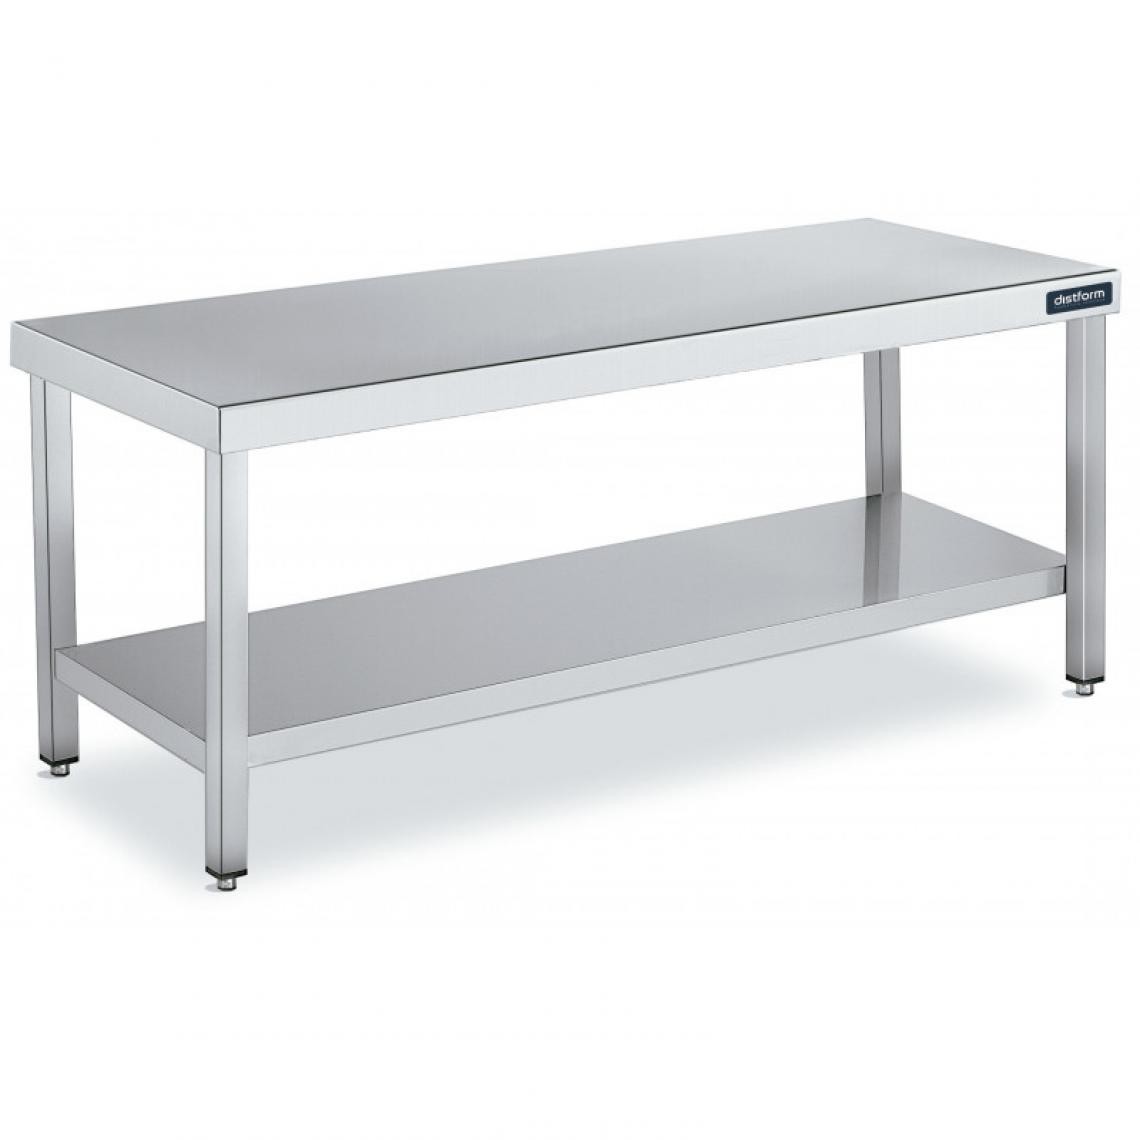 DISTFORM - Table de Travail Centrale Inox avec 1 Étagère - Gamme 600 - Hauteur 600 - Distform - Acier inoxydable1600x600 - Tables à manger